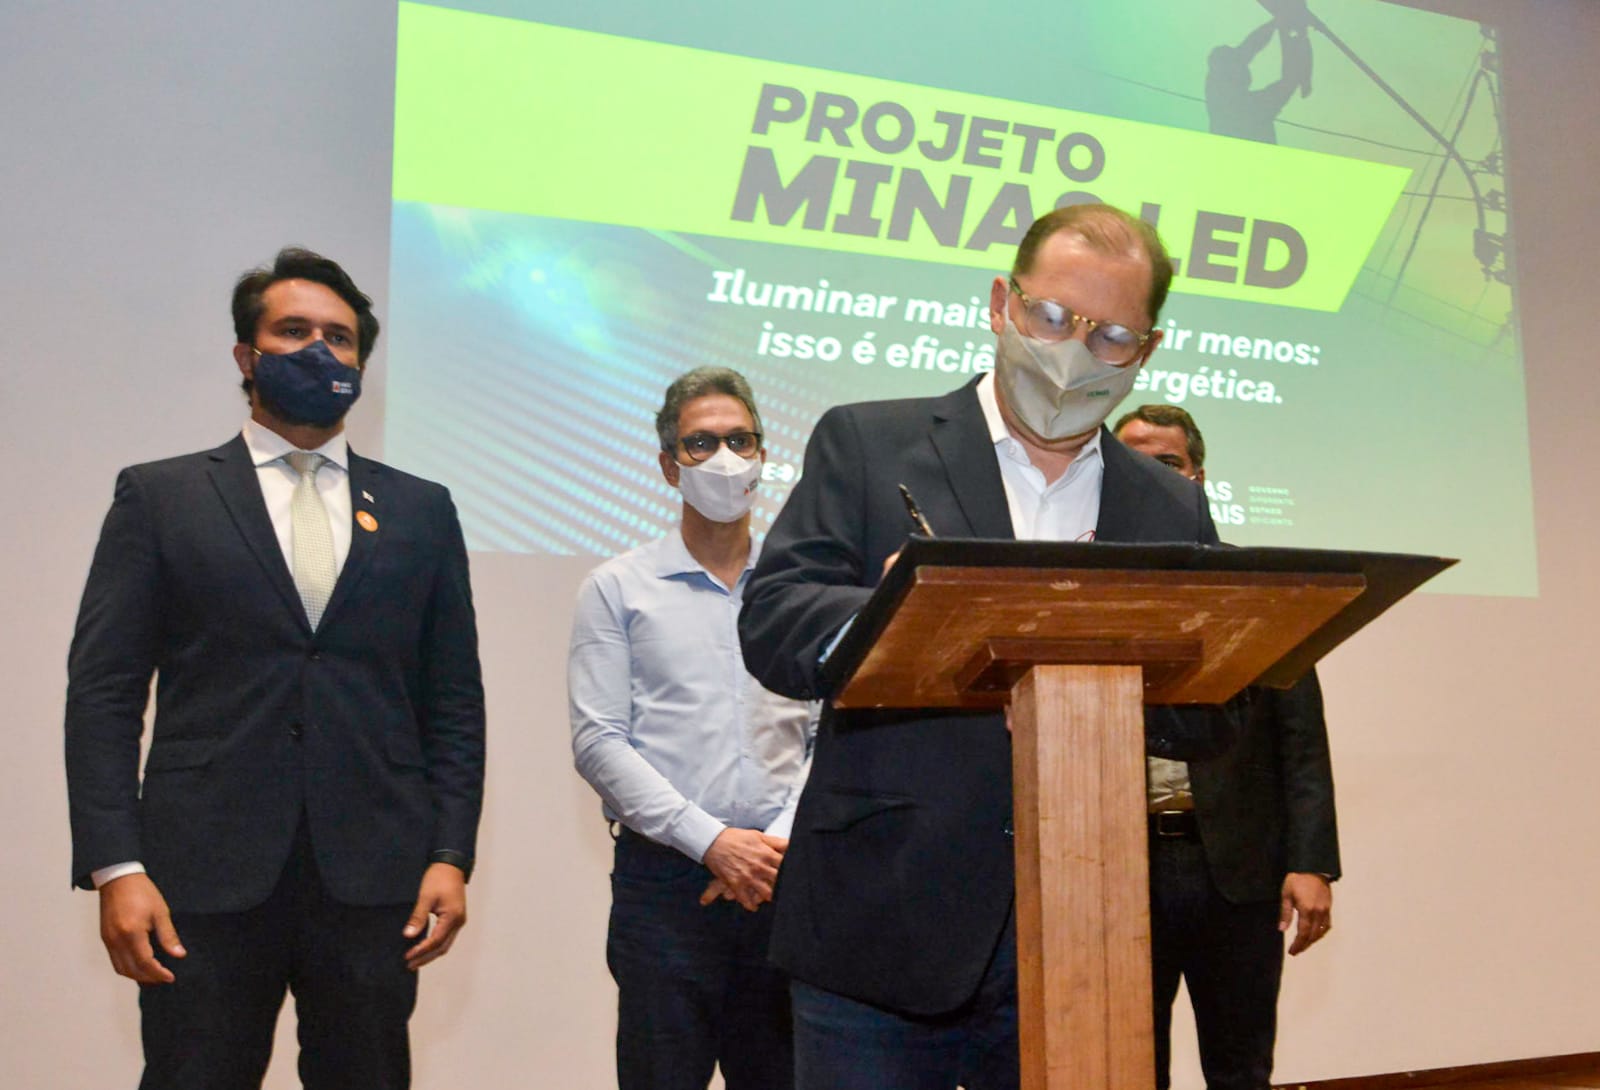 Cemig moderniza iluminação pública de municípios mineiros por meio do projeto Minas LED